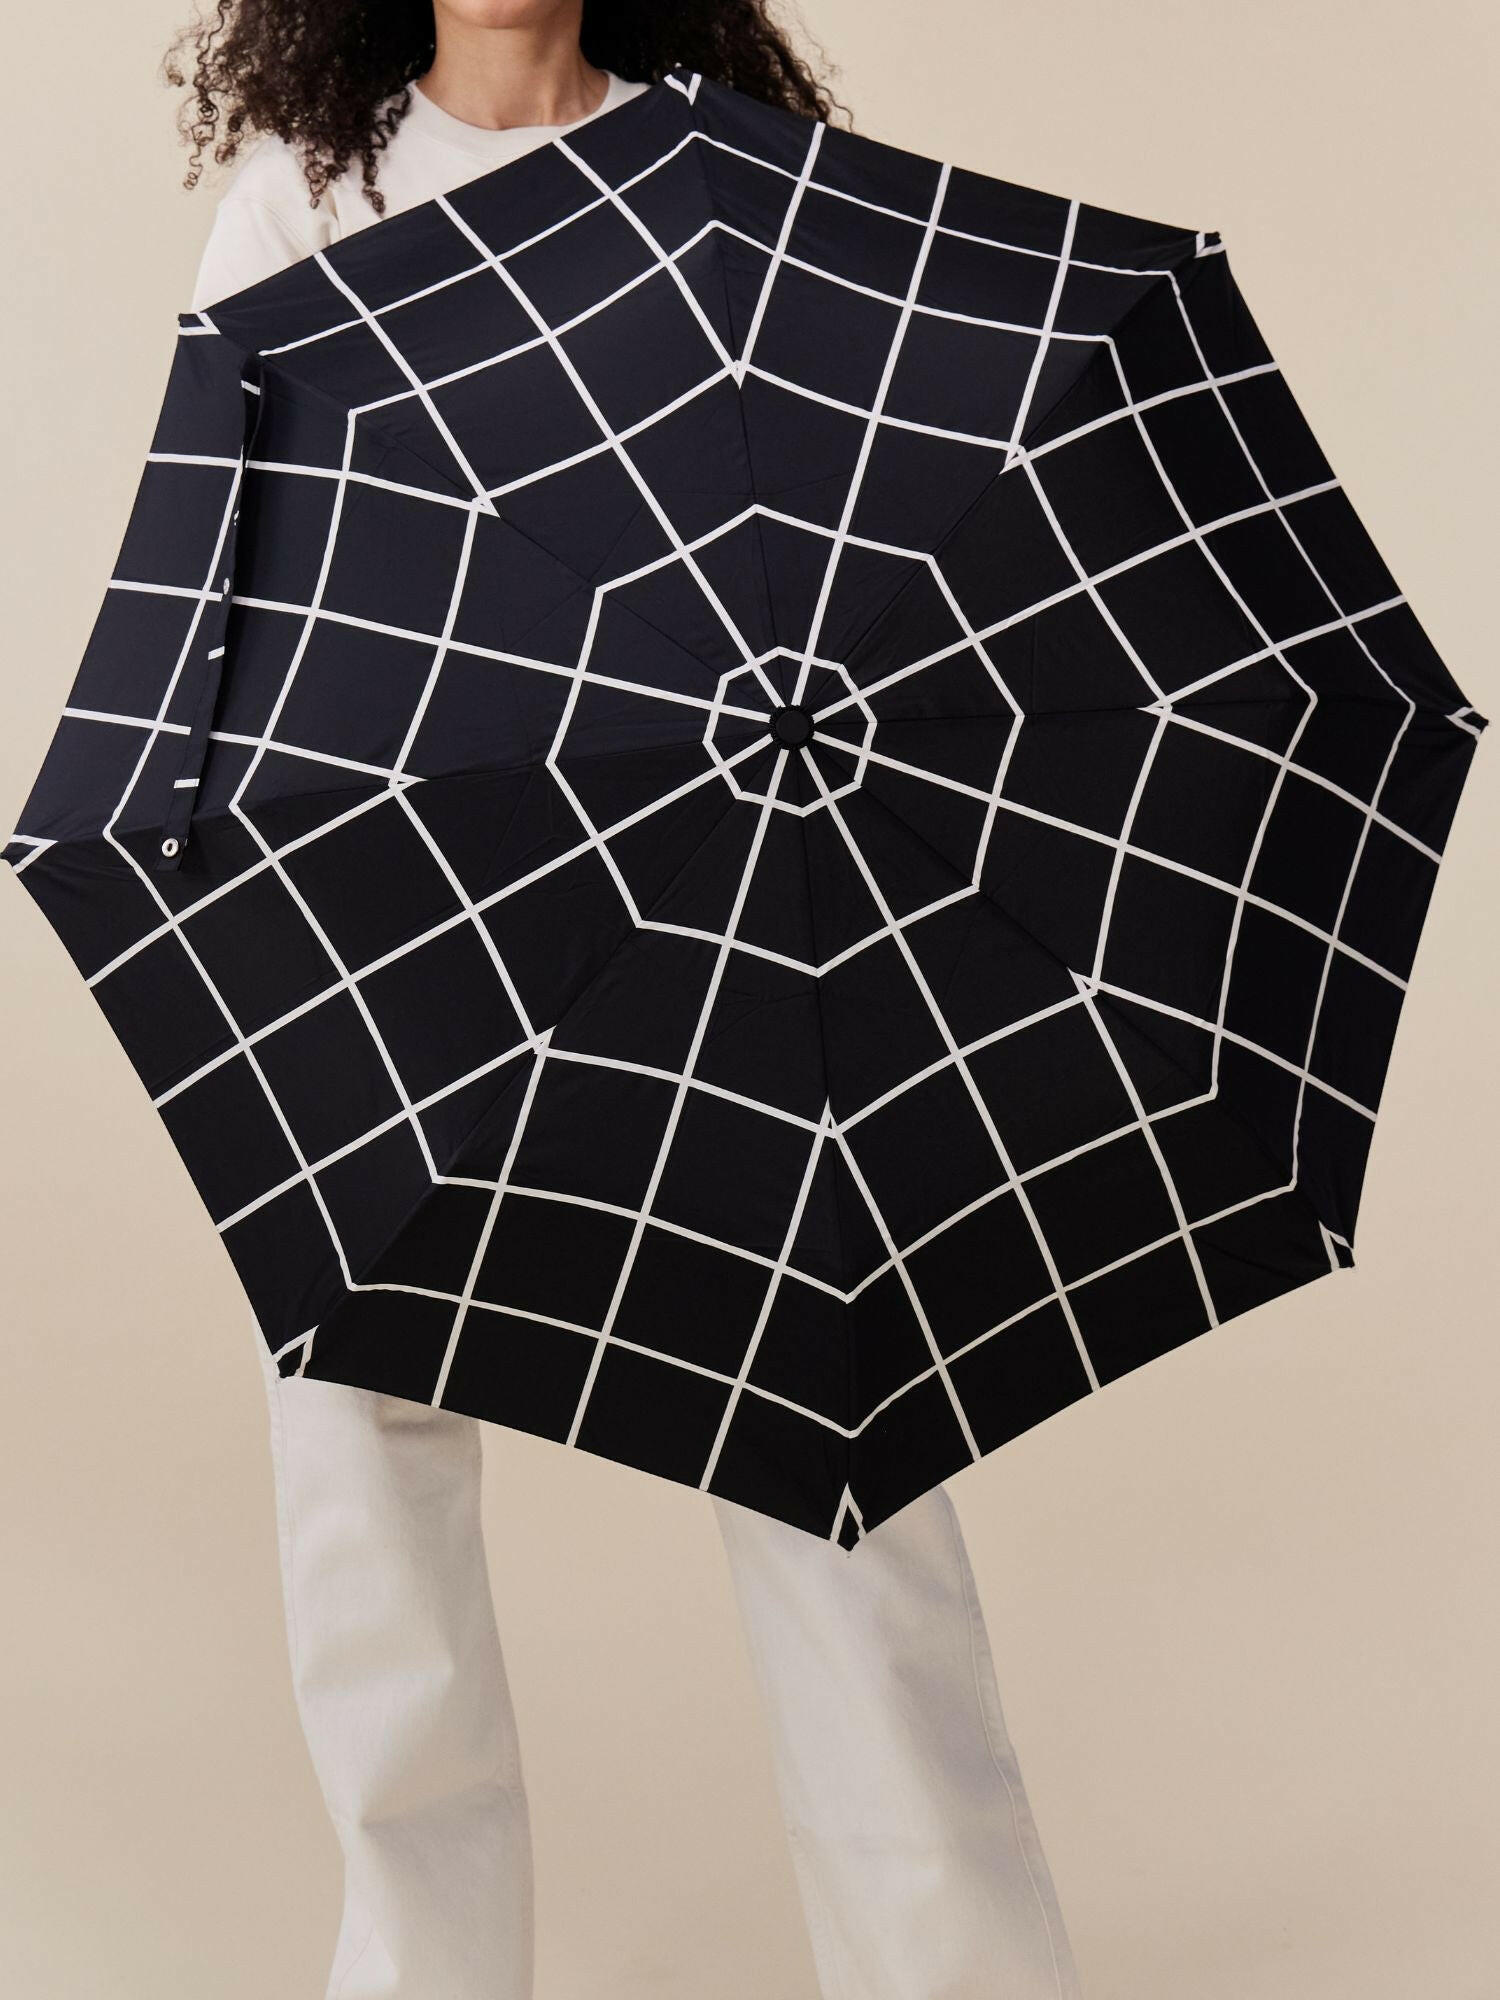 Black Grid Eco-Friendly Umbrella.